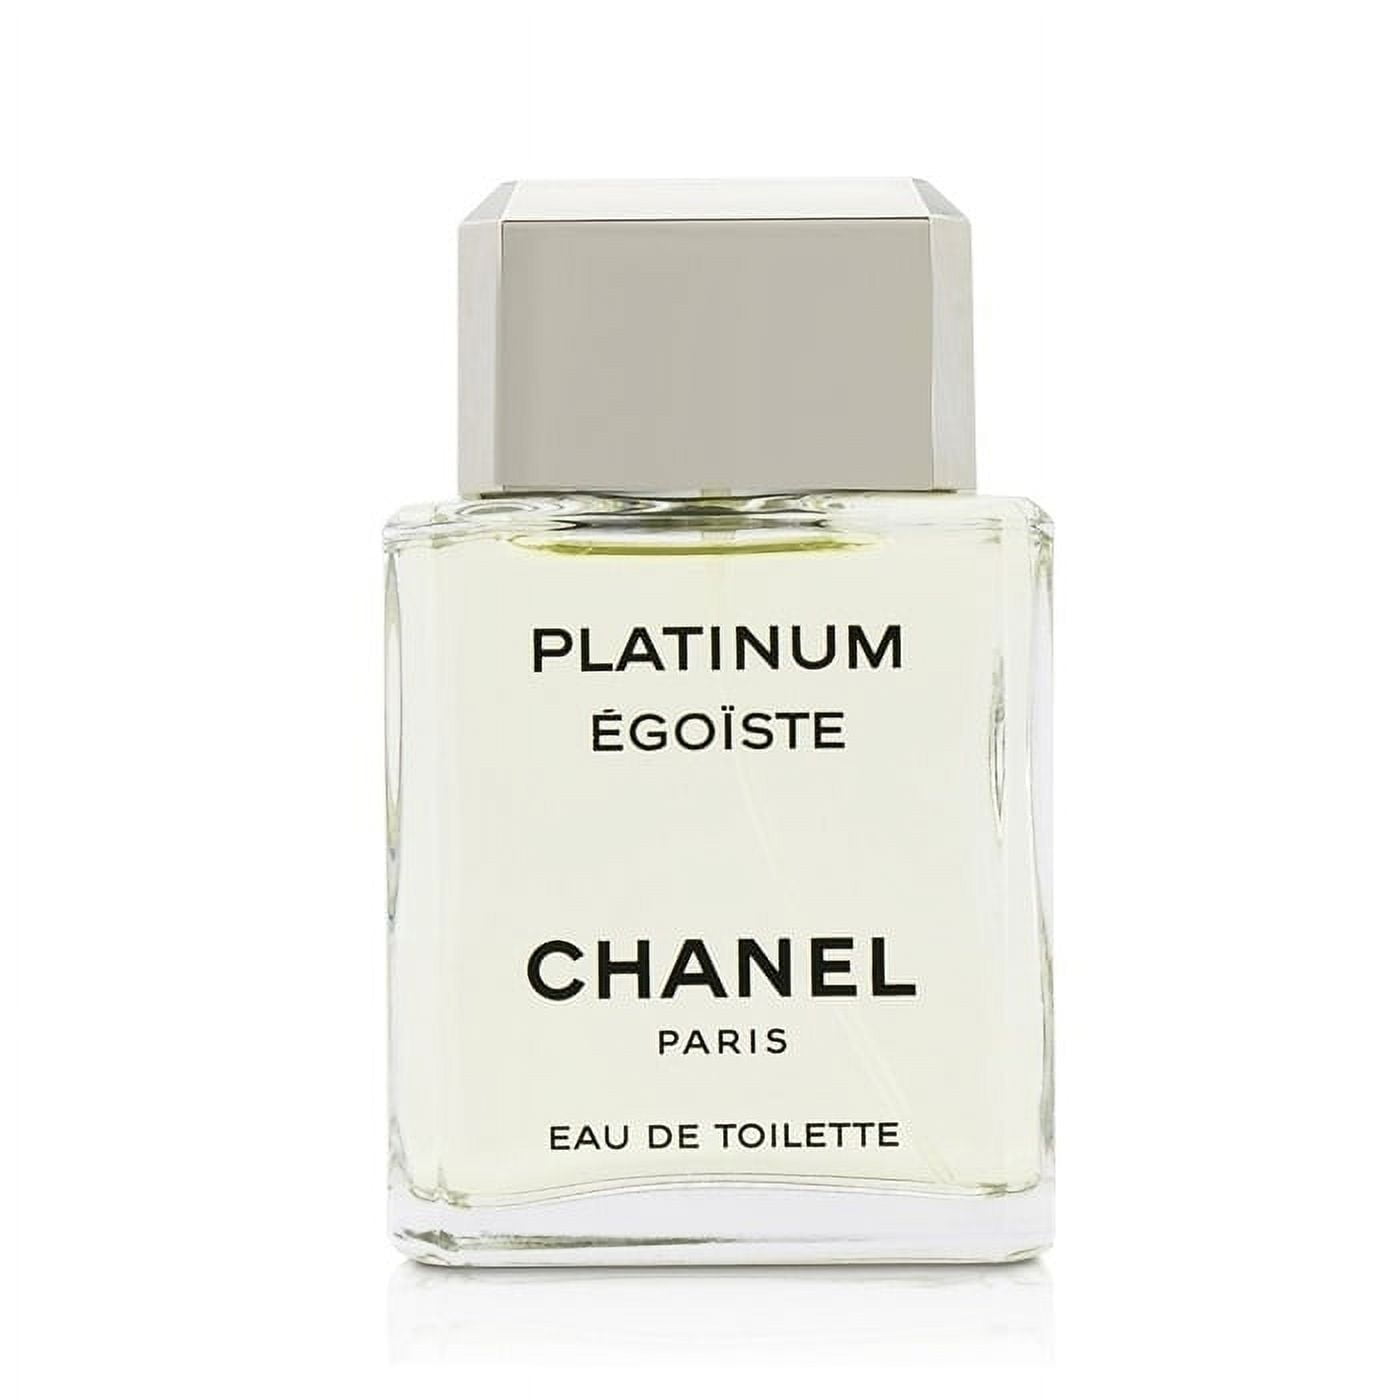  Coco Mademoiselle de CHANEL para mujer, Eau de Toilette en  aerosol, 1.7 onzas : Chanel: Comida Gourmet y Alimentos